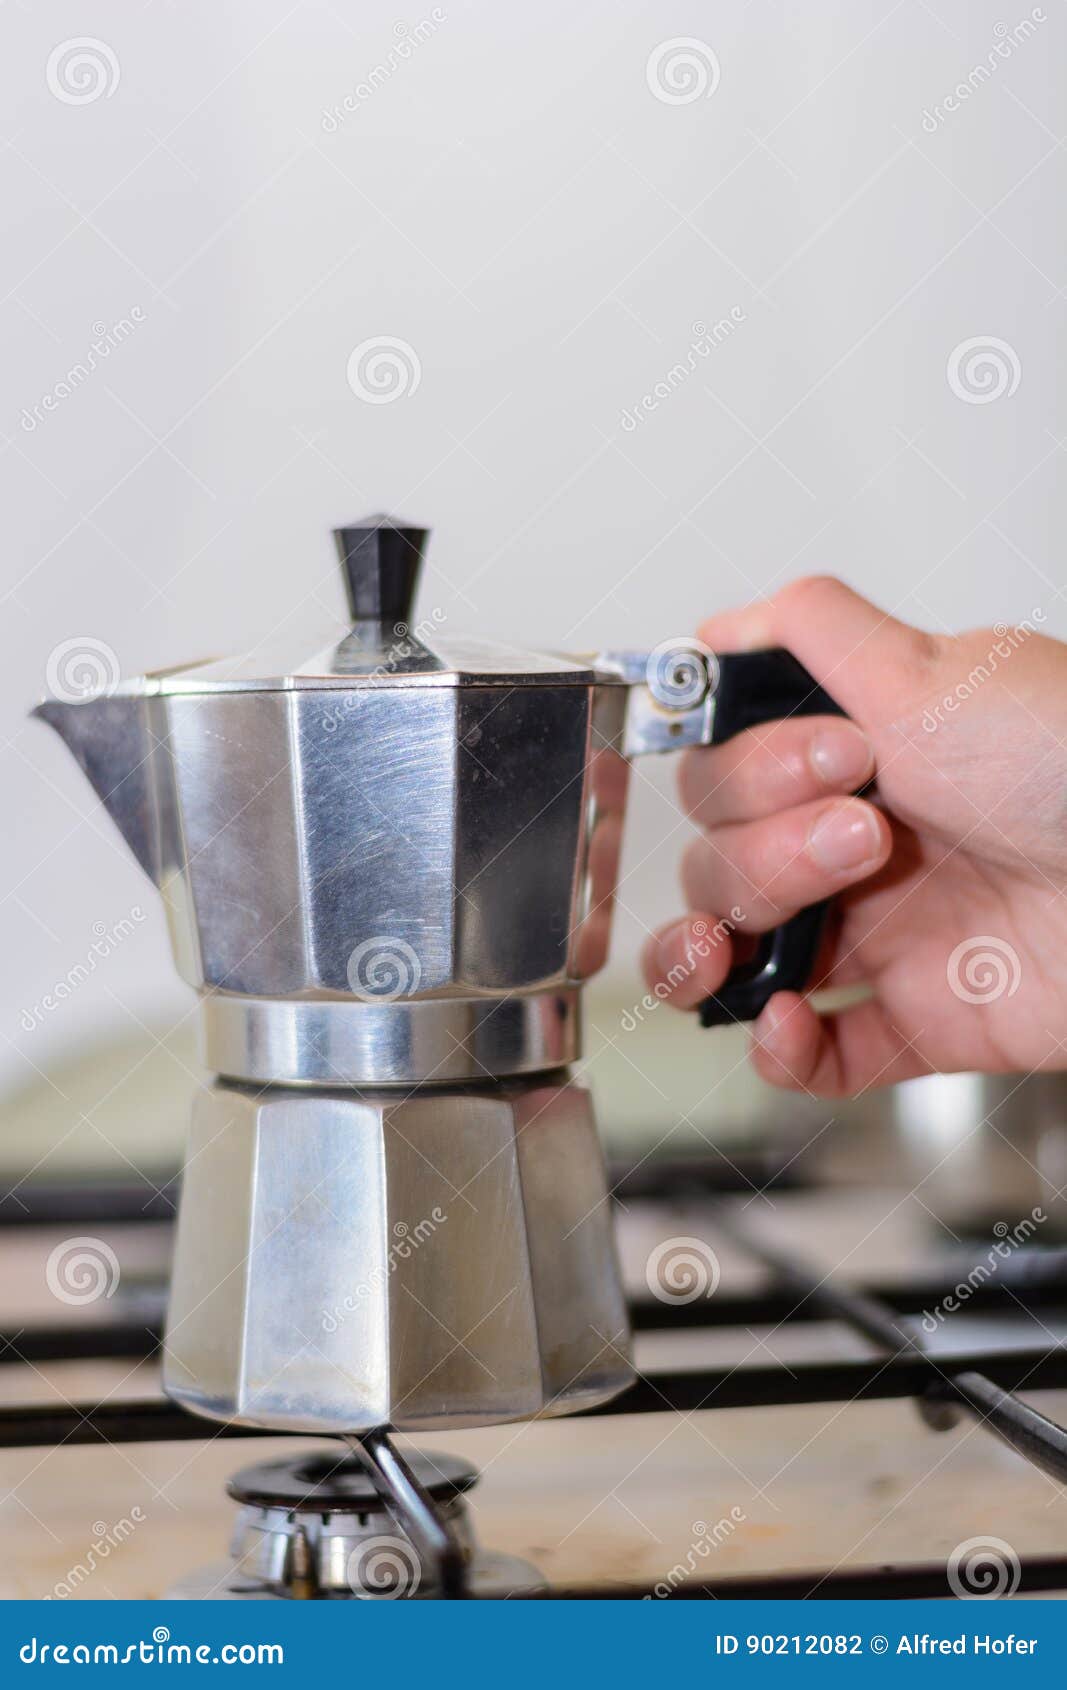 Durf Bestaan stem Koffie Met Koffiepot Te Koken Stock Foto - Image of machine, sluit: 90212082